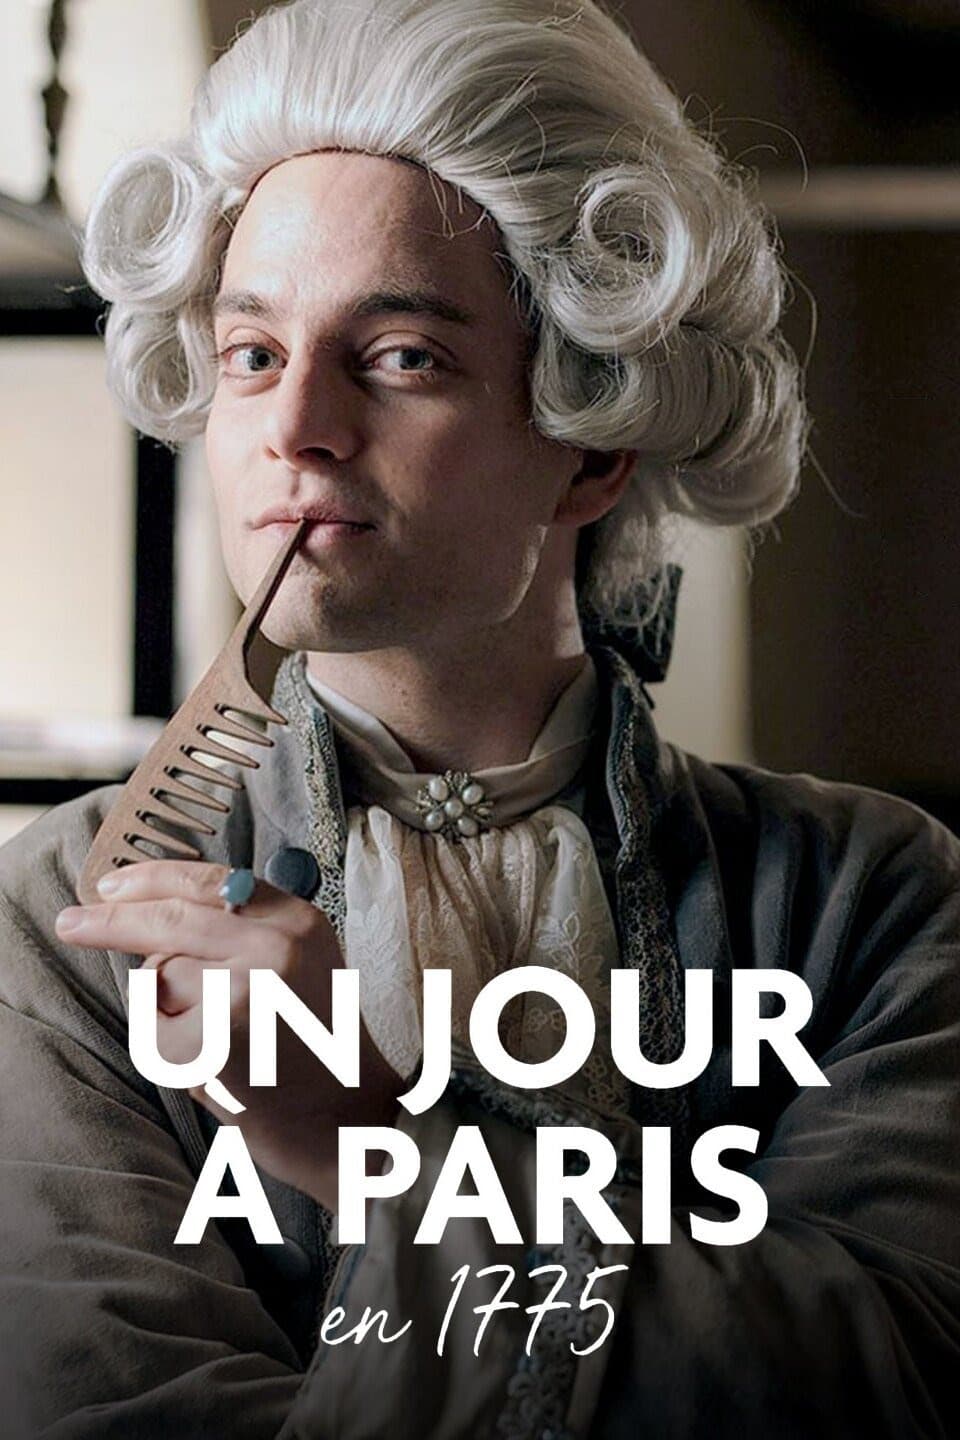 Un jour à Paris en 1775